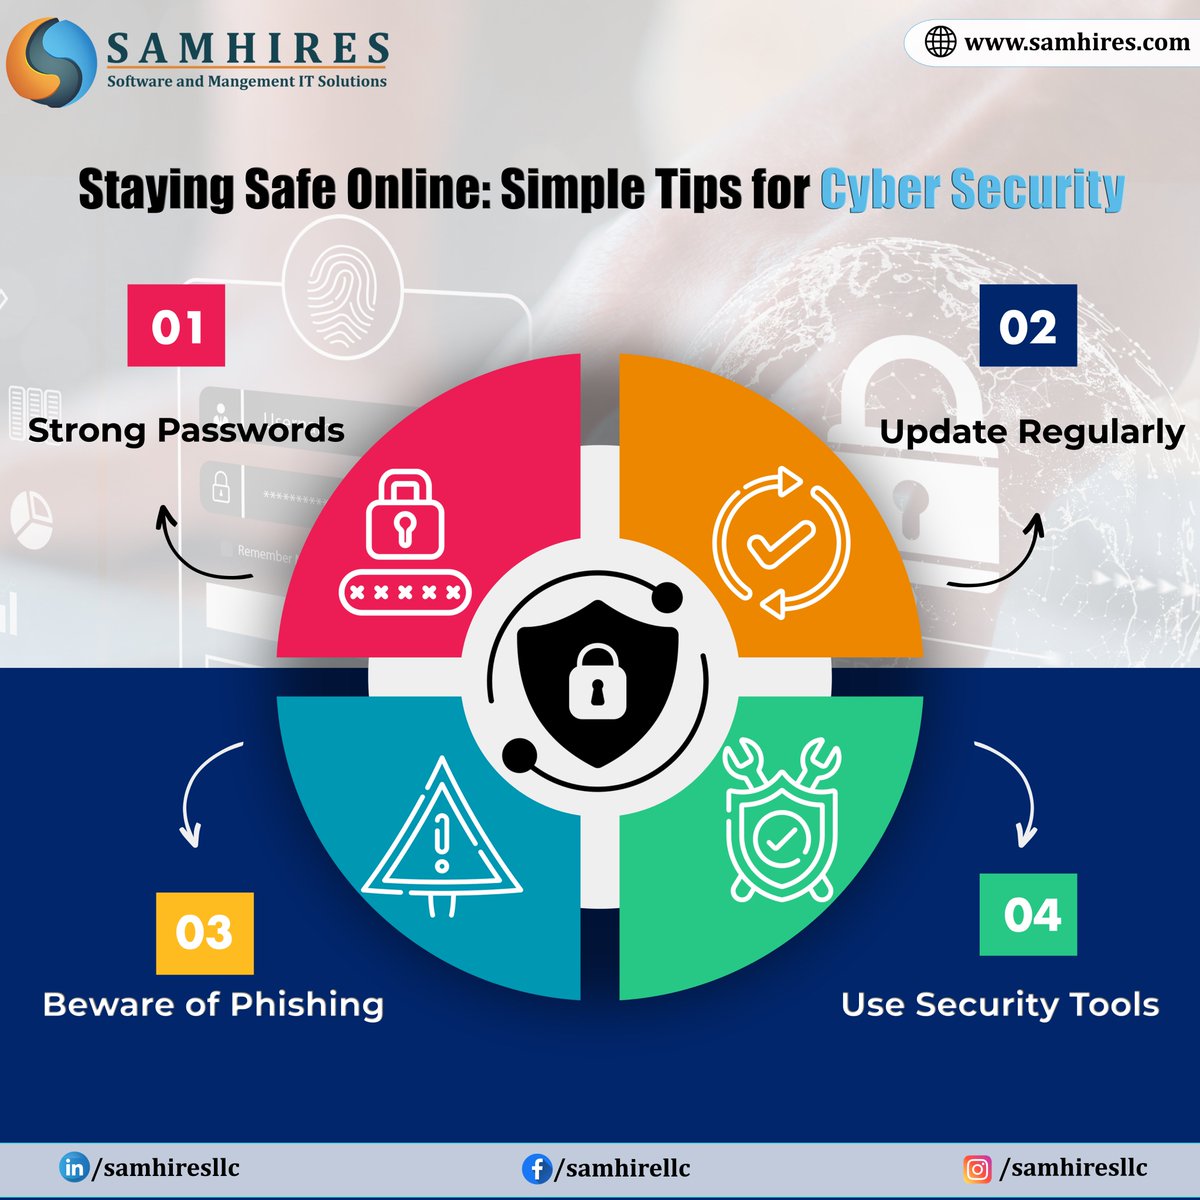 𝐒𝐚𝐦𝐡𝐢𝐫𝐞𝐬 𝐋𝐋𝐂 𝐏𝐫𝐞𝐬𝐞𝐧𝐭𝐬: 𝐓𝐨𝐩 5 𝐂𝐲𝐛𝐞𝐫𝐬𝐞𝐜𝐮𝐫𝐢𝐭𝐲 𝐓𝐢𝐩𝐬 𝐟𝐨𝐫 𝐎𝐧𝐥𝐢𝐧𝐞 𝐒𝐚𝐟𝐞𝐭𝐲

#SamhiresLLC #CybersecurityTips #OnlineSafety #PasswordSecurity #TwoFactorAuthentication #SoftwareUpdates #PhishingAwareness #SecureConnections #VPN